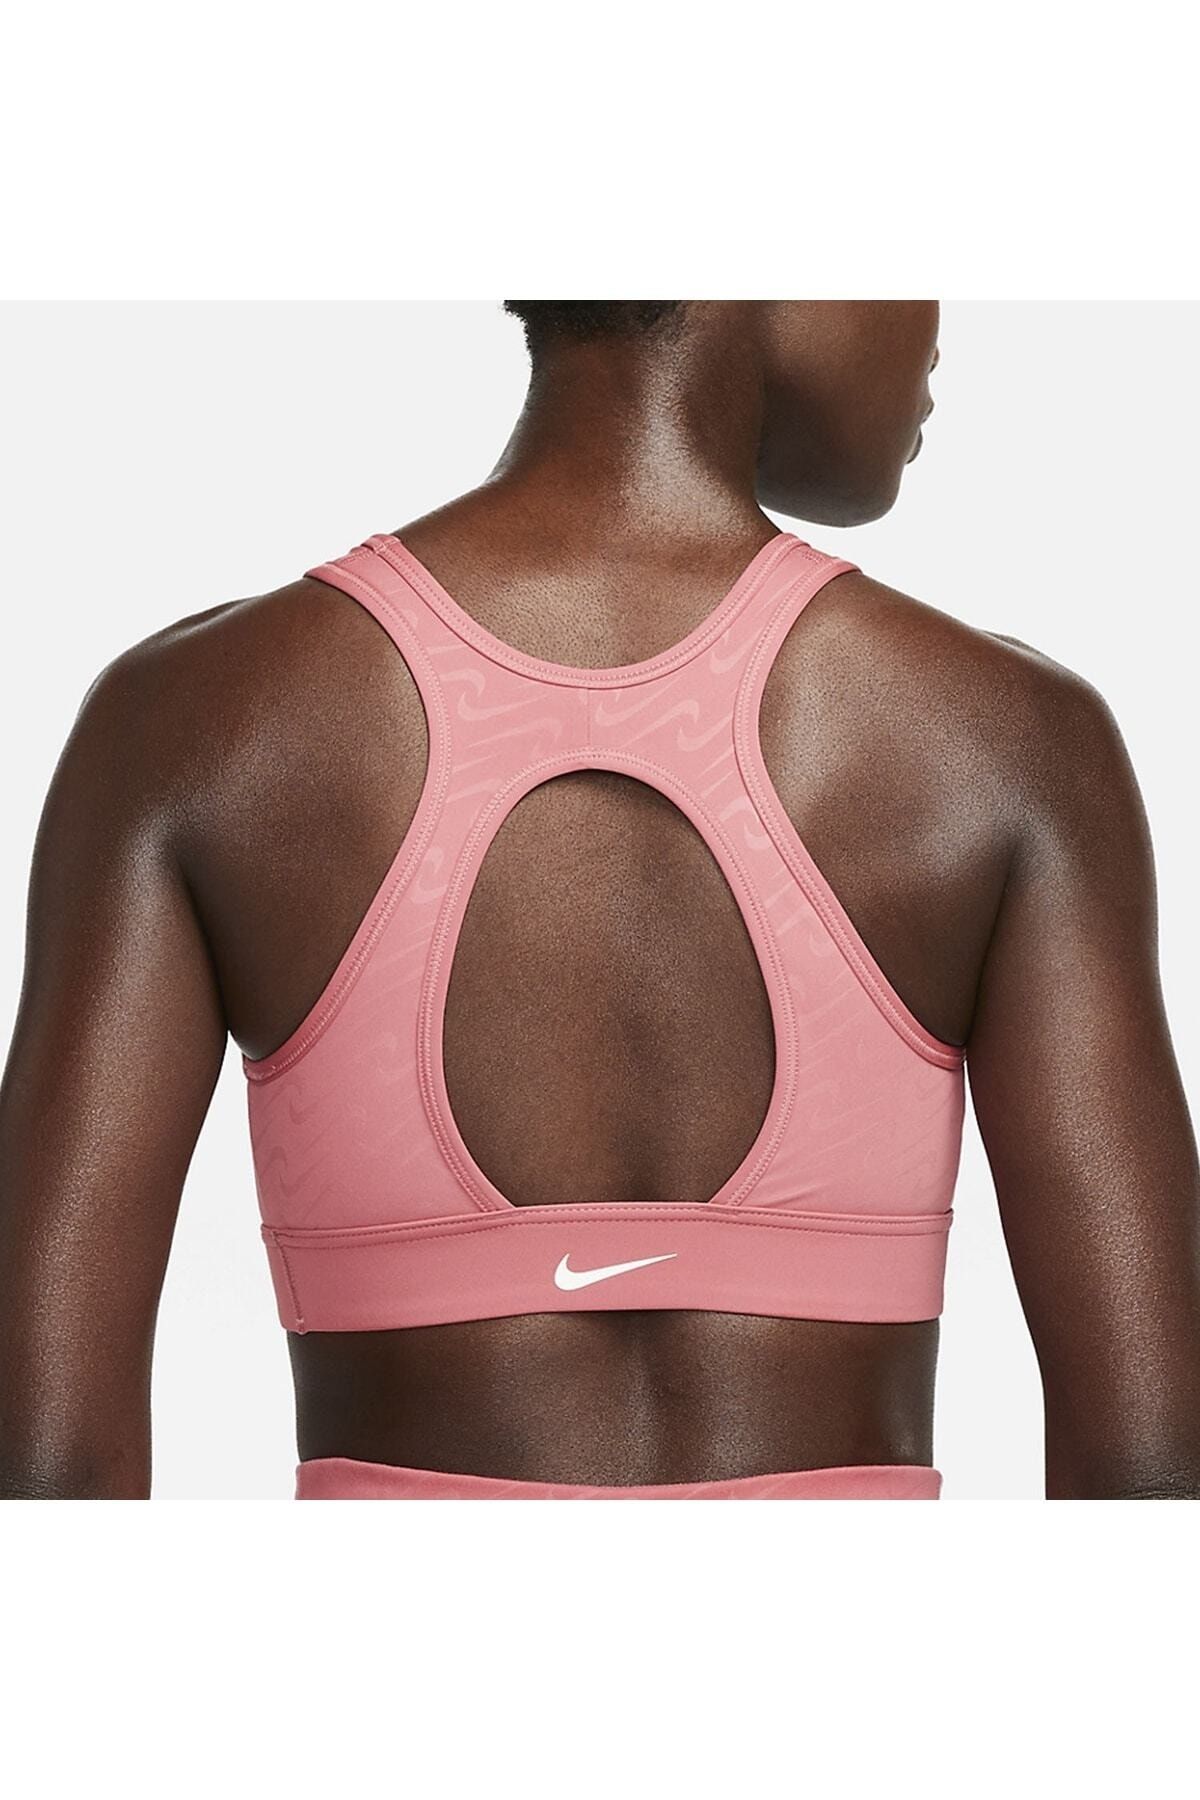 Nike Dri-fit Swoosh (m) Medium Support Padded Women's Sports Bra (pregnancy)  Cq9289-084 - Trendyol